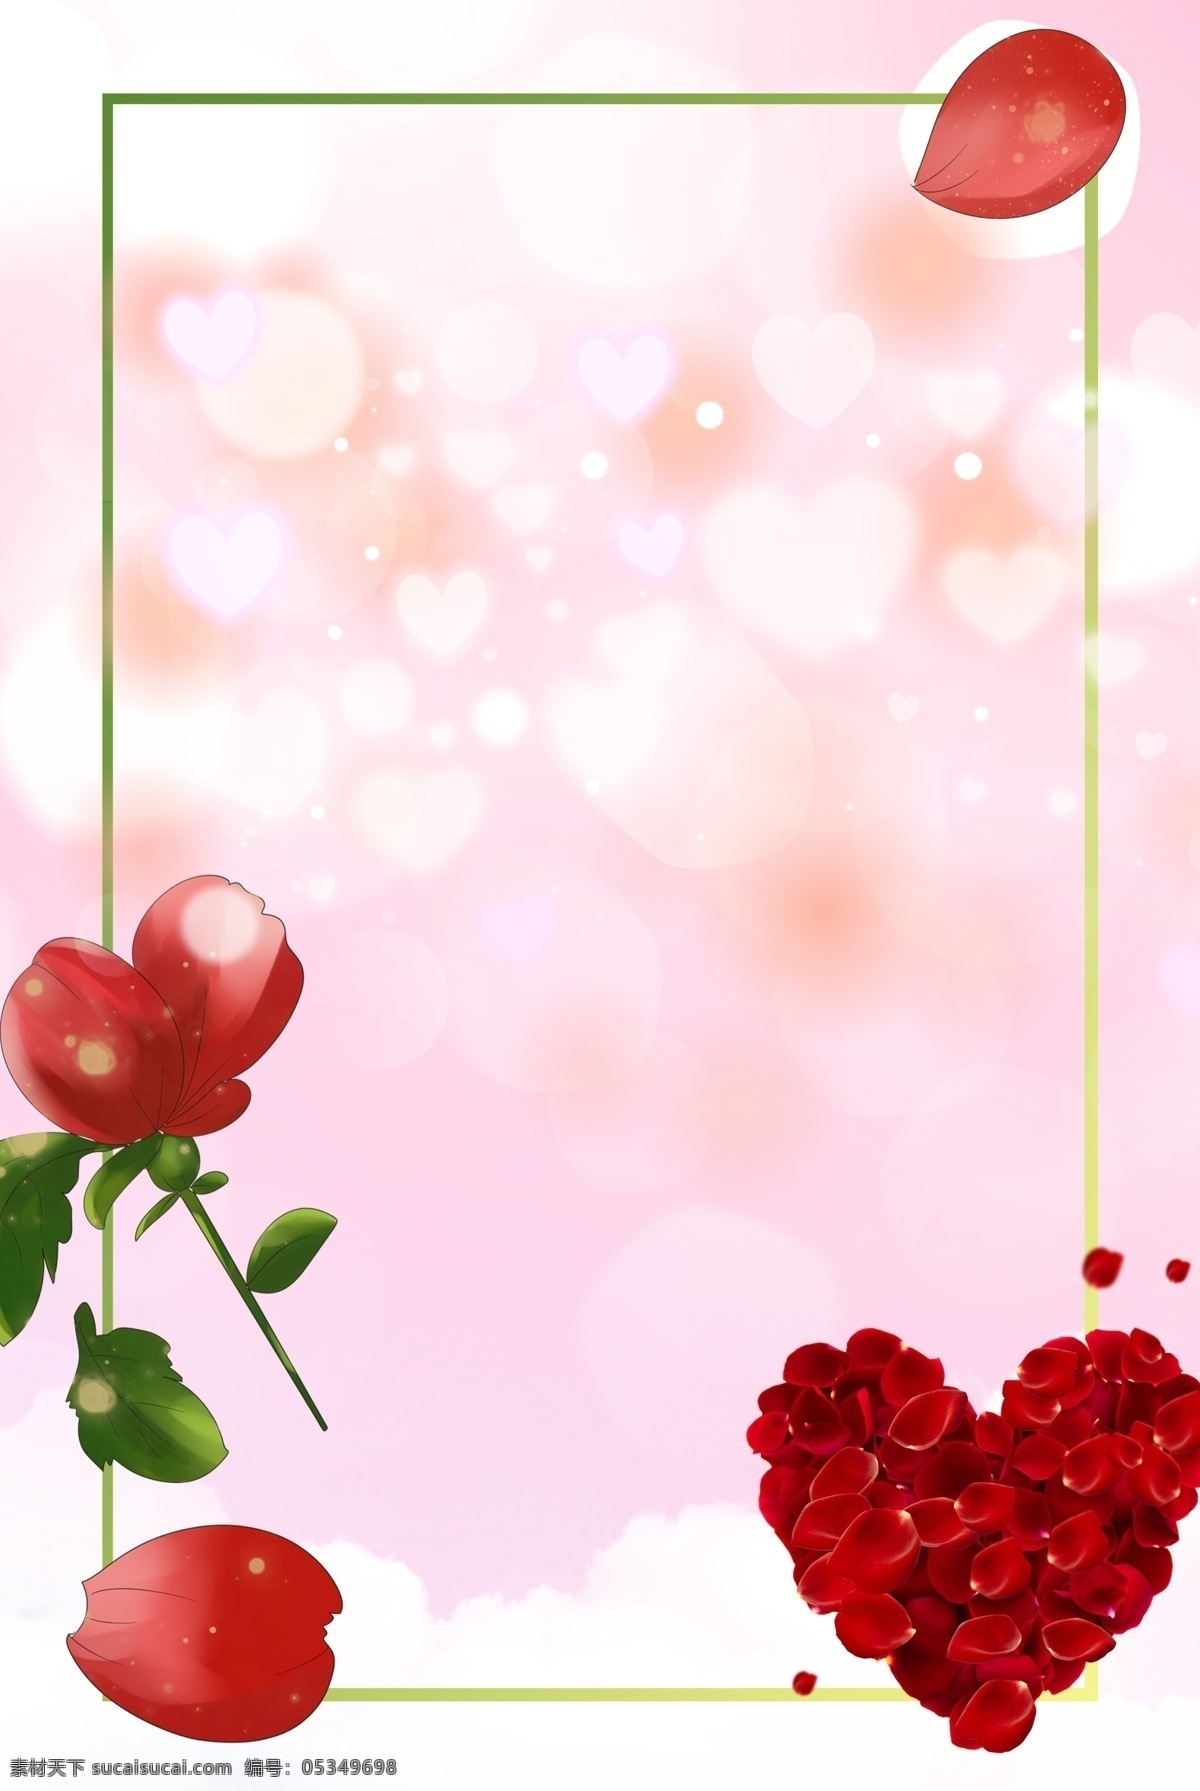 简约 爱情 爱心 玫瑰 边框 背景 唯美 七夕 情人节 礼物 爱 情侣 节日 传统